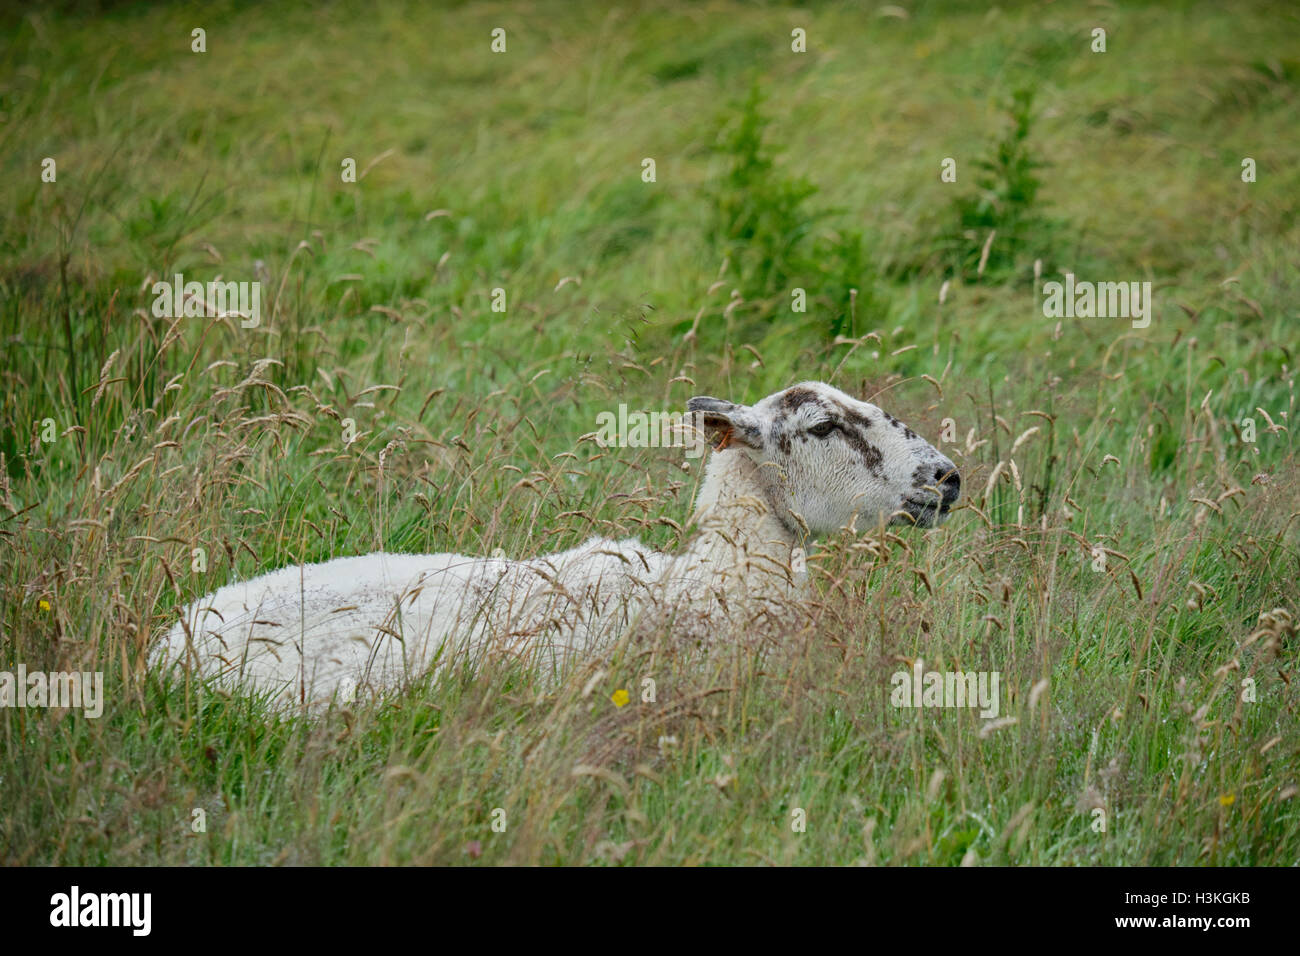 Oveja descansando, oveja, en la hierba larga de un prado cerca del Parque Nacional South Downs, Sussex, Inglaterra, Reino Unido. Foto de stock